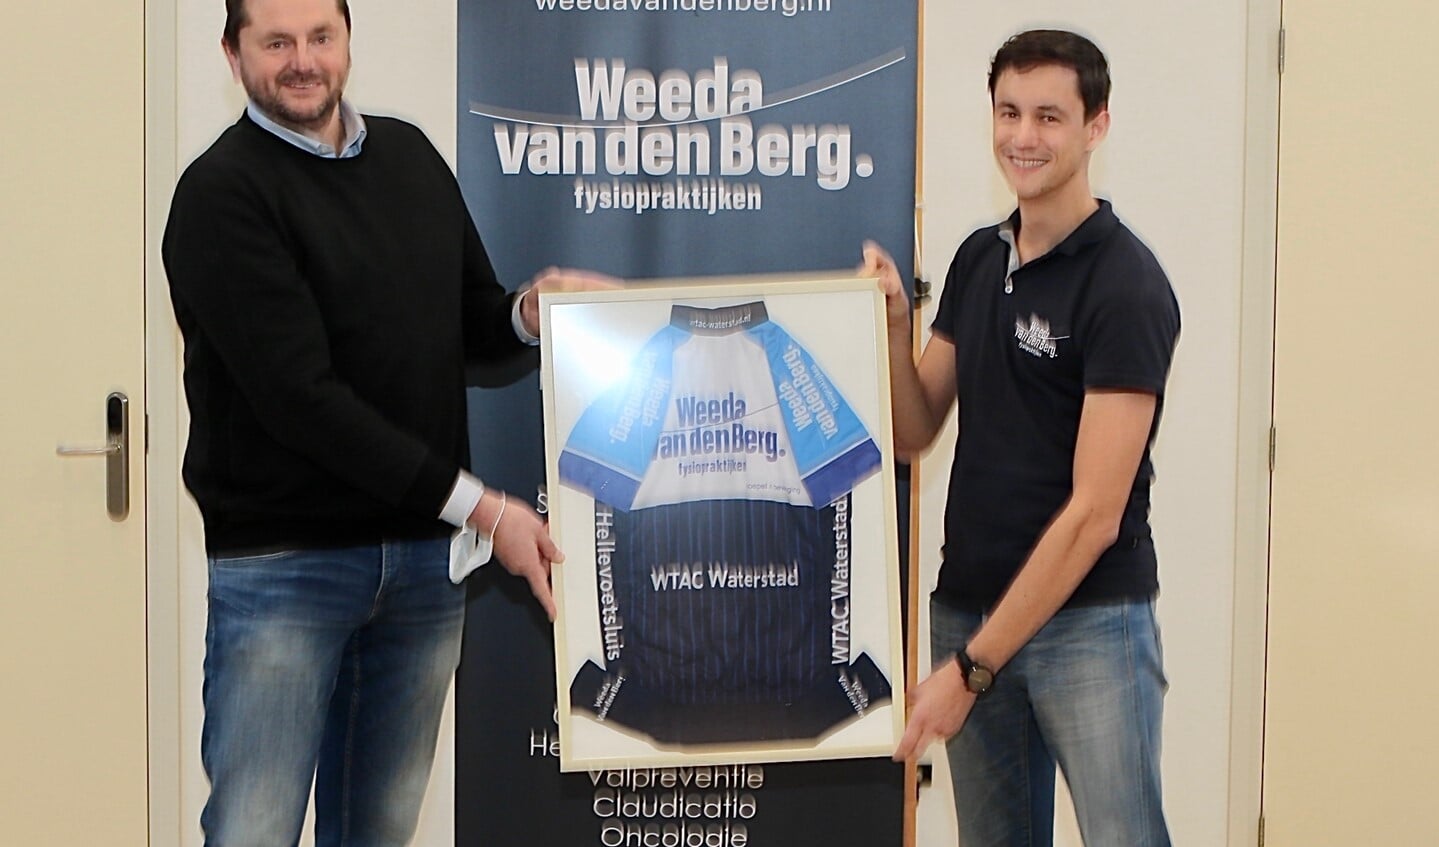 Erik den Adel, voorzitter van toerclub WTAC Waterstad, overhandigt het ingelijste shirt aan Frank Weeda, samen met Levi van den Berg ondernemers van Weeda Van den Berg Fysiopraktijken. Foto Theo van Kralingen.